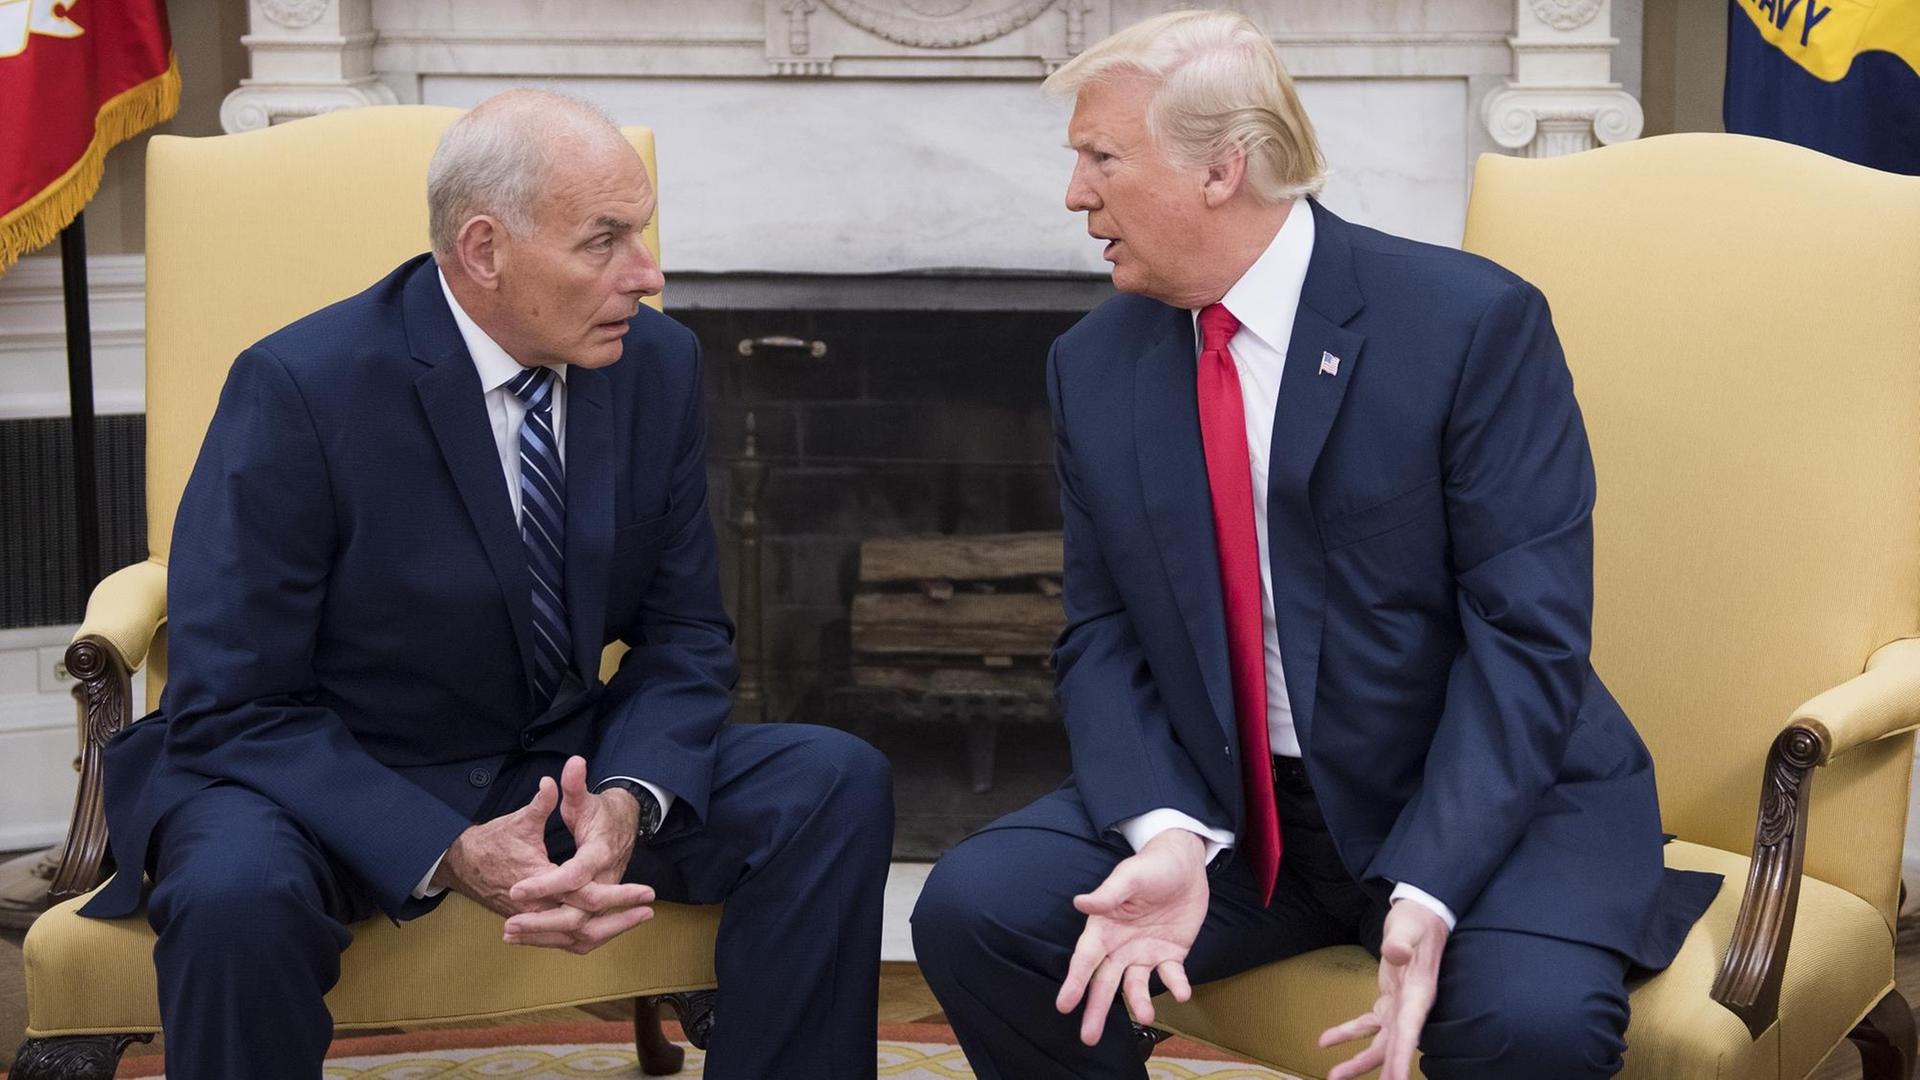 Der neue Stabschef im Weißen Haus, John Kelly, und US-Präsident Donald Trump sitzen im Weißen Haus nebeneinander